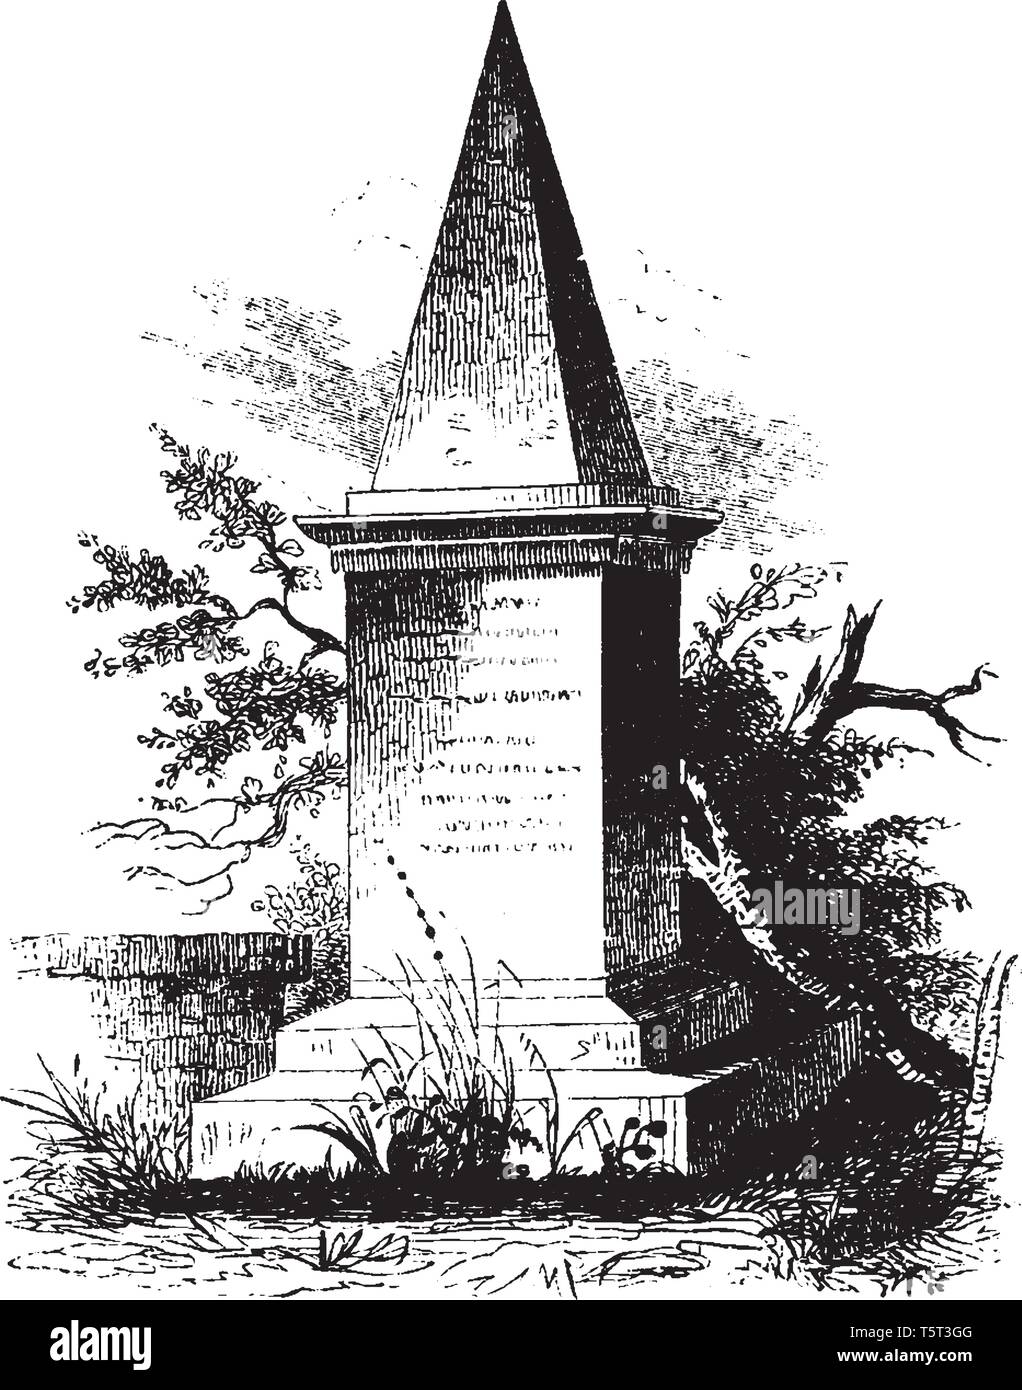 Un monumento di Anthony Wayne, un esercito degli Stati Uniti officer e statista,vintage disegno della linea di incisione o illustrazione Illustrazione Vettoriale